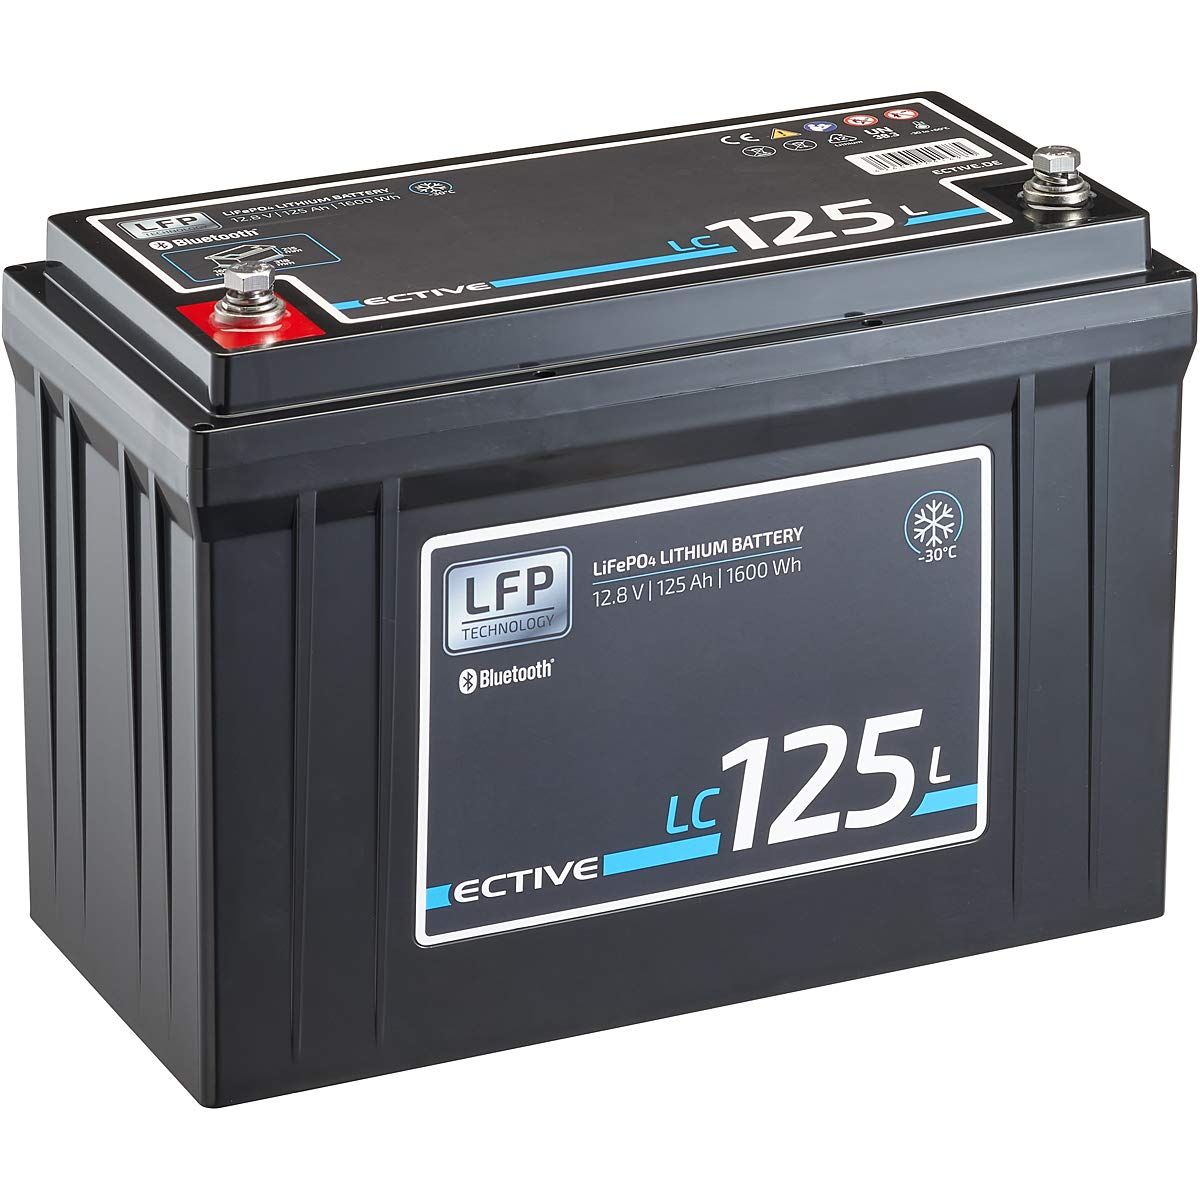 ECTIVE LiFePO4 Batterie LC125L LT - 12V, 125Ah, 1600Wh, Bluetooth, App, Low Temperature - Lithium-Eisenphosphat Versorgungsbatterie, Bootsbatterie, Solarbatterie für Wohnwagen, Wohnmobil, Camper von ECTIVE